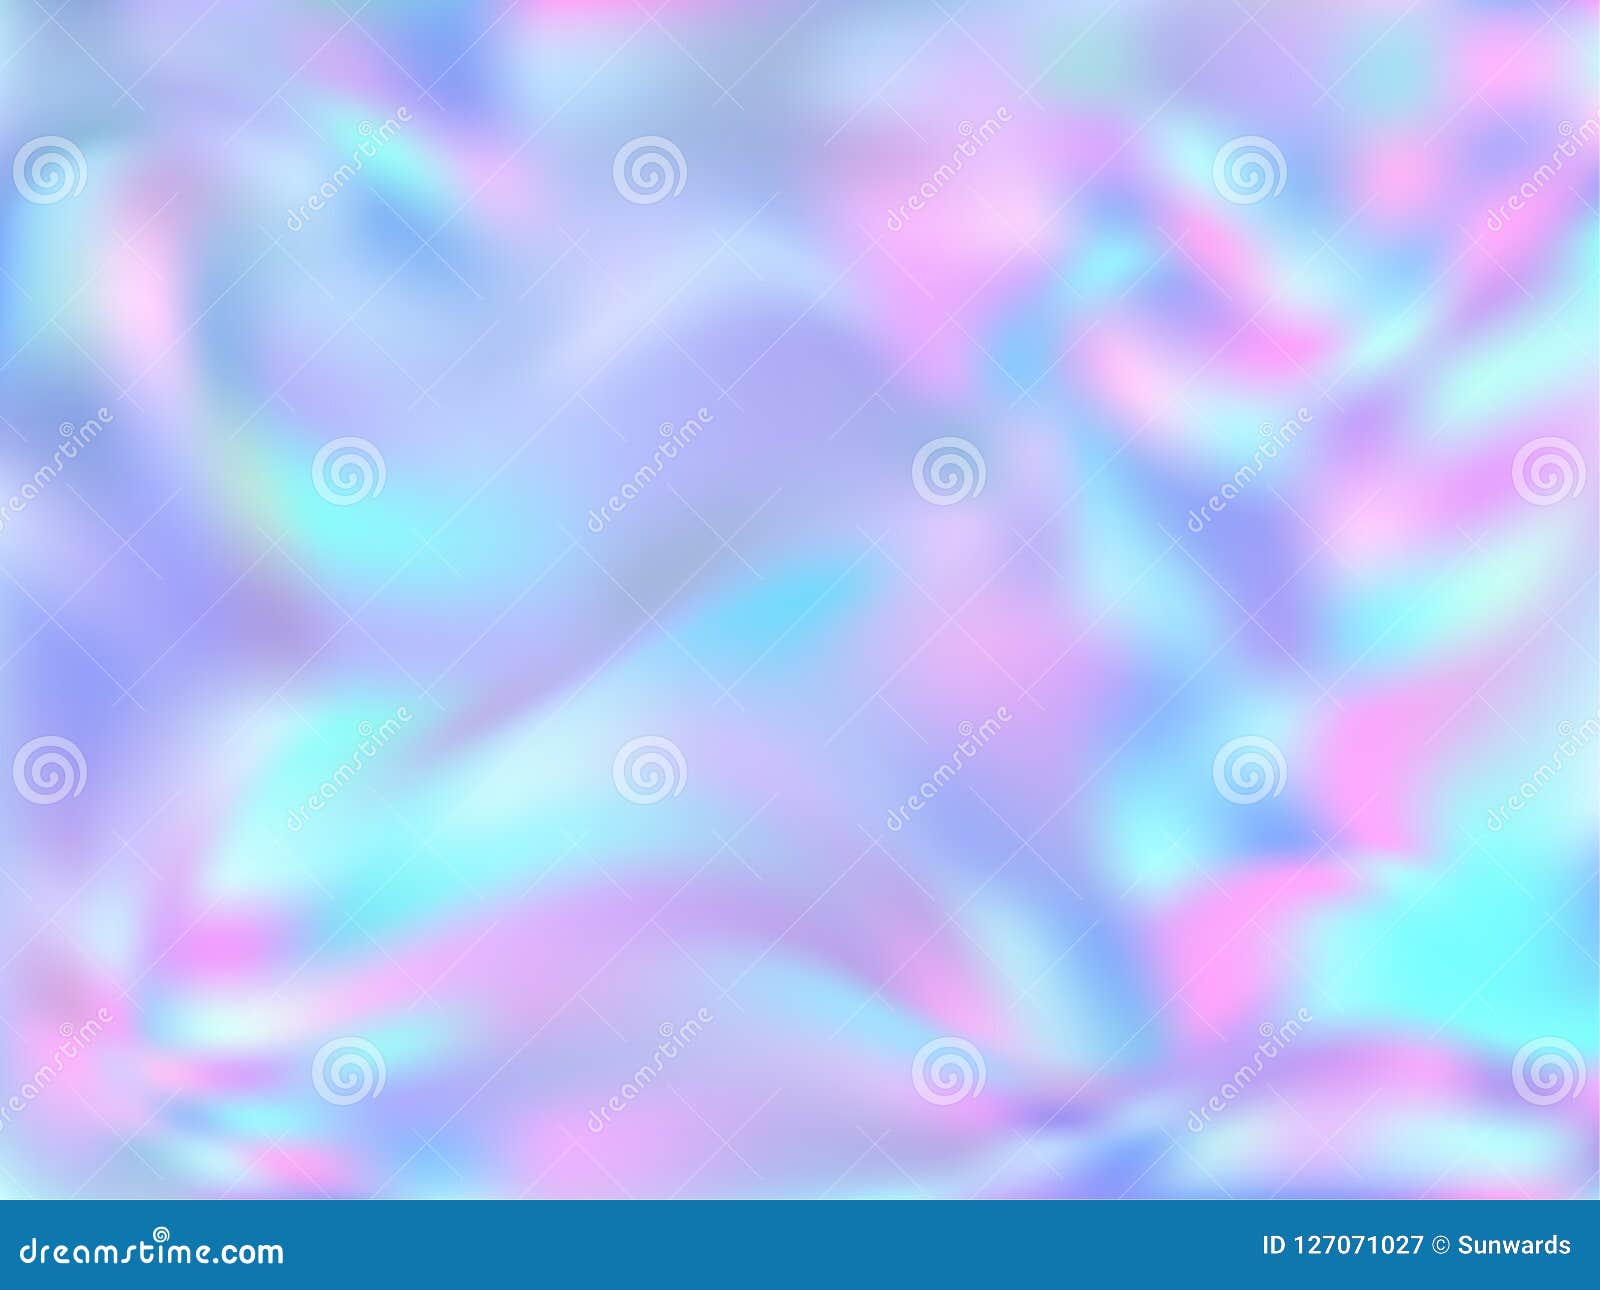 Phông nền holographic patterned neon đáng yêu đang là hot trend hiện nay. Với thiết kế độc đáo, đầy màu sắc và hình hoa văn cách điệu, phông nền này sẽ giúp hình ảnh của bạn trở nên đặc biệt và thu hút hơn. Hãy truy cập trang web của chúng tôi để tìm kiếm phông nền nổi bật nhất.